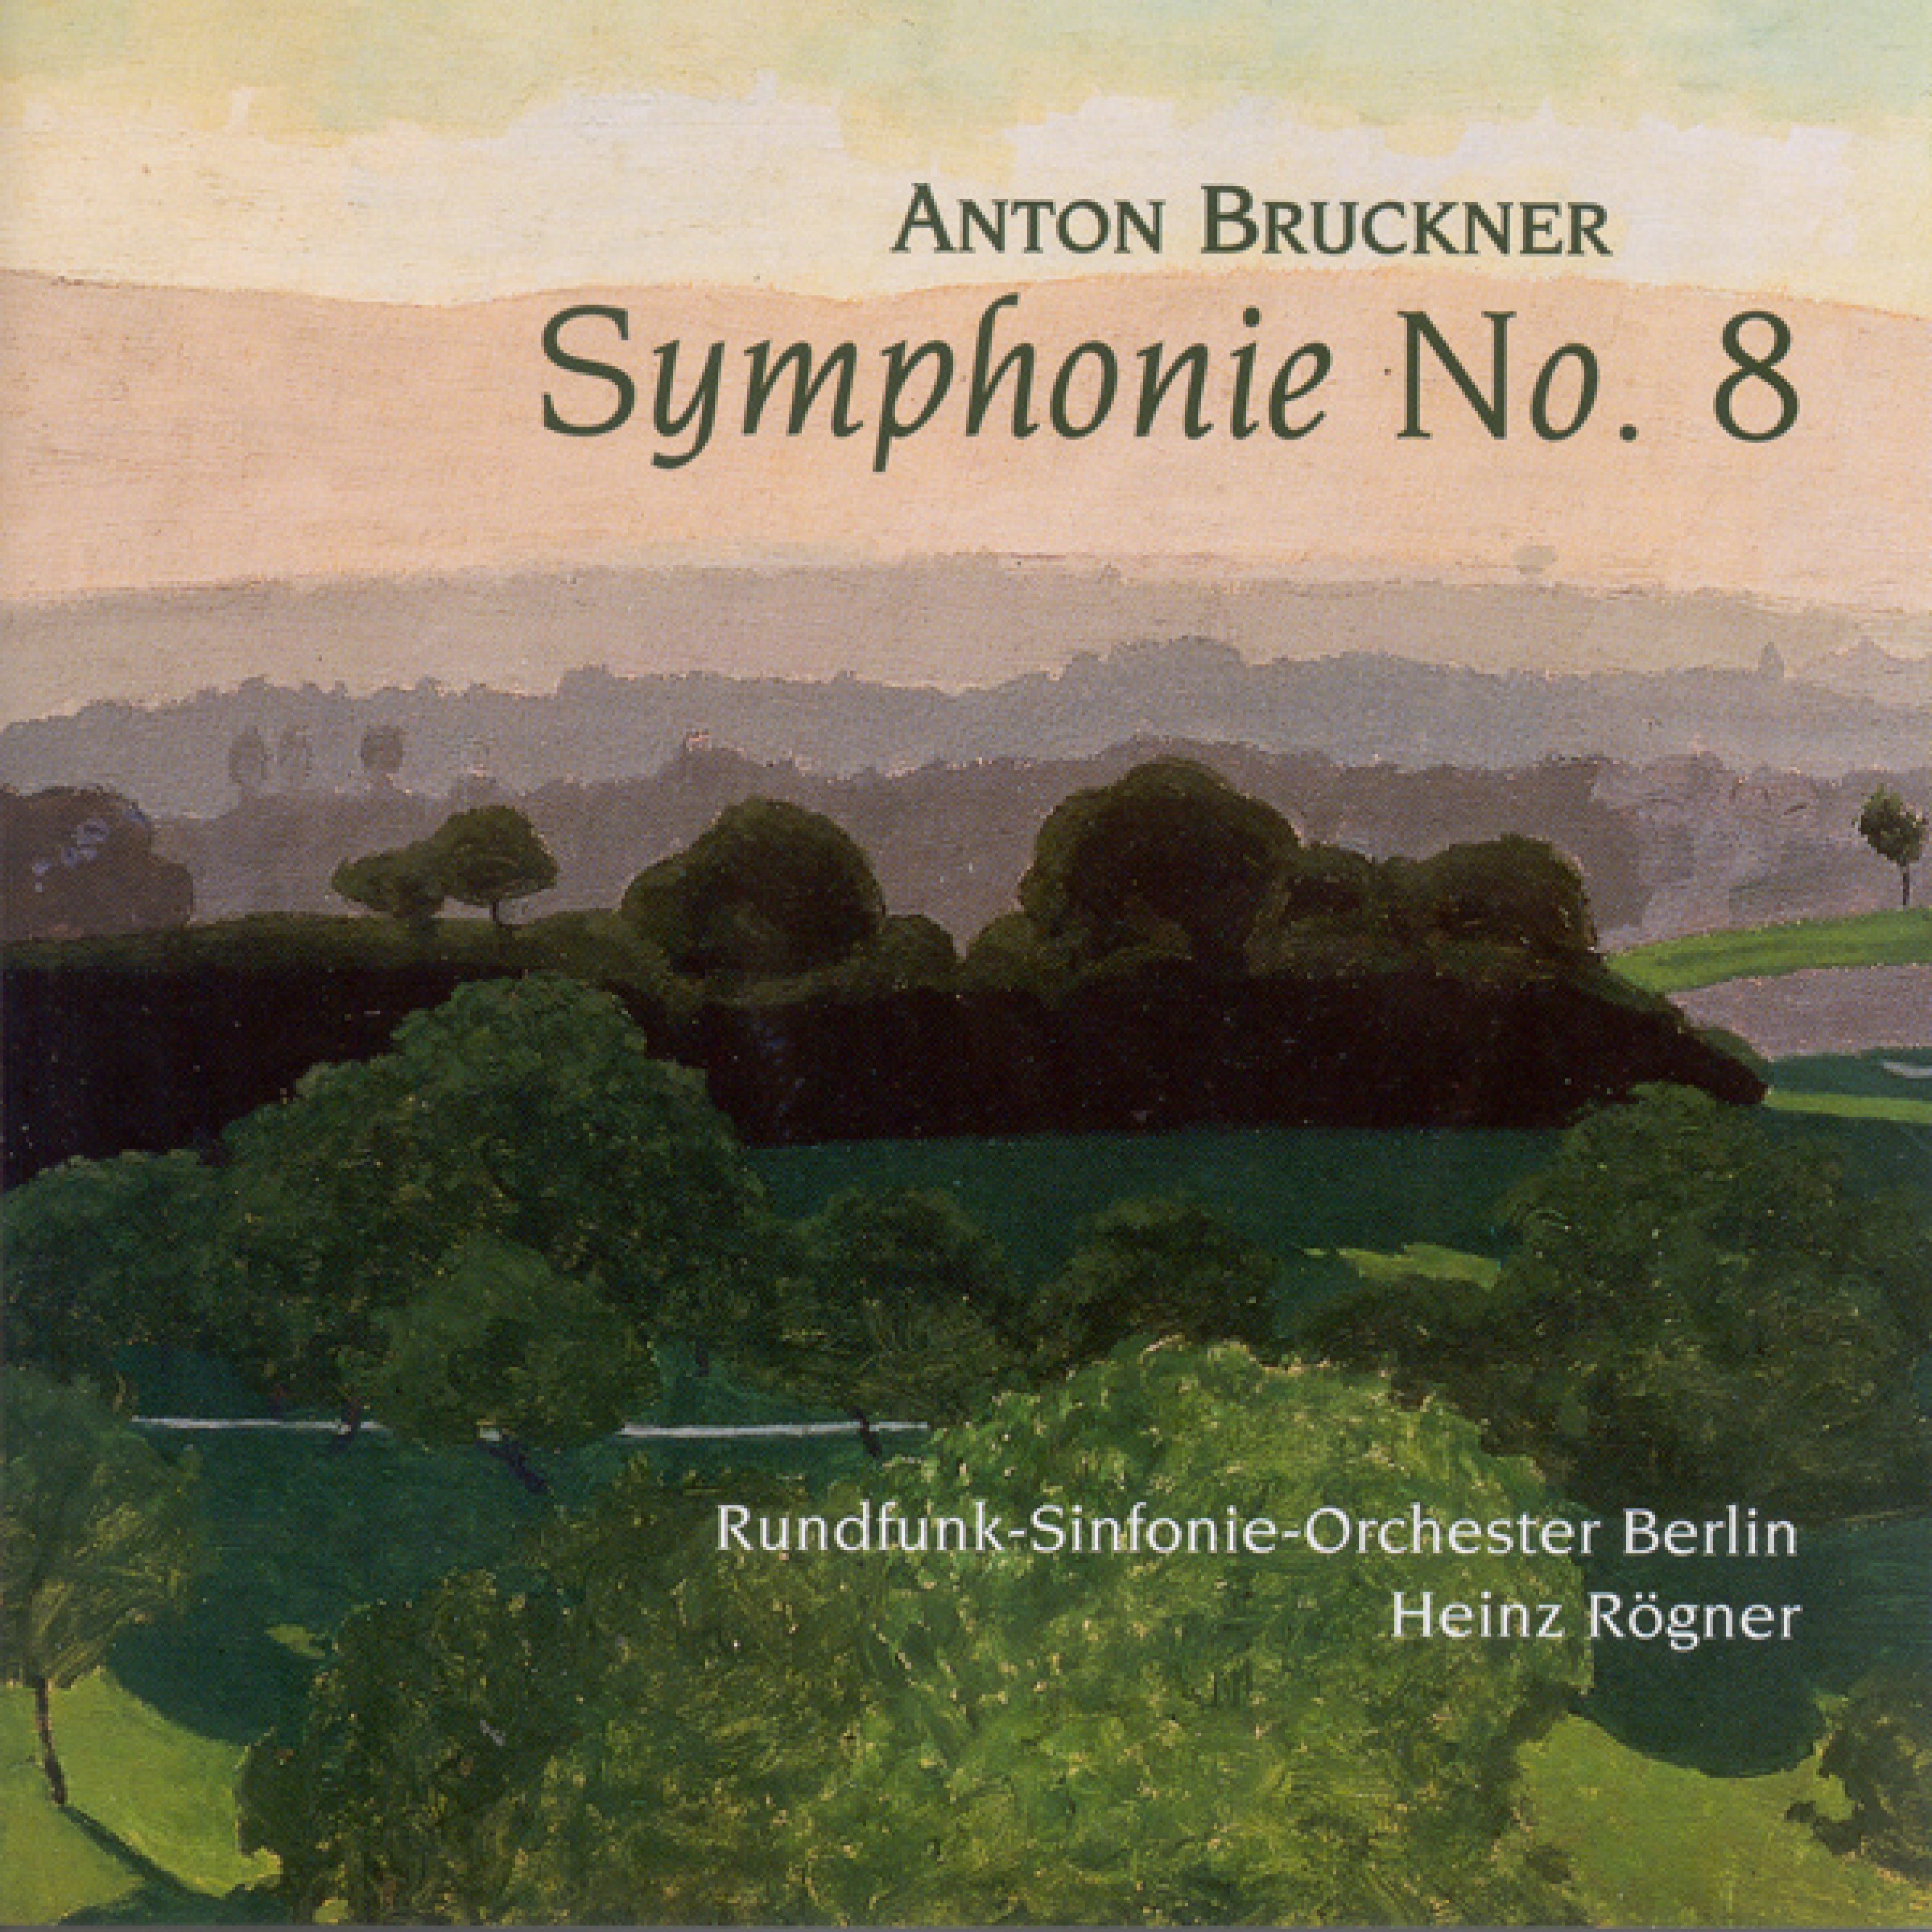 Anton Bruckner: Symphony No. 8 (Berlin Symphony, Rogner)